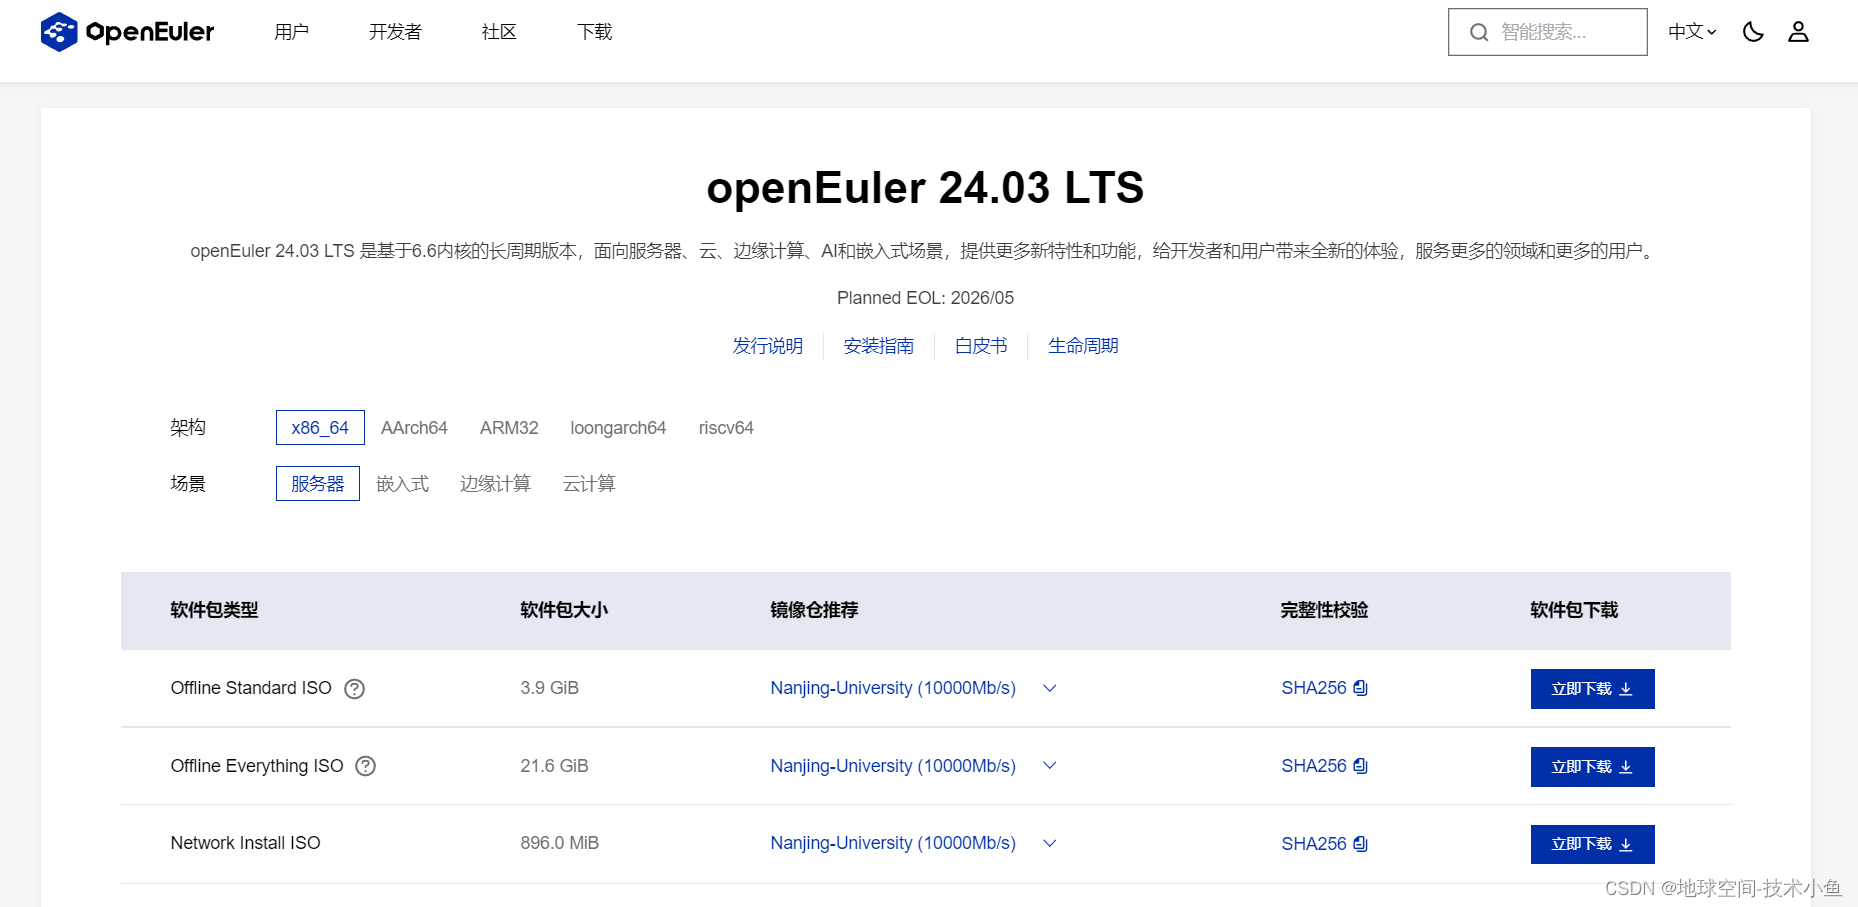 2024年发布openEuler 24.03 LTS：特点-增加软件中心，AI